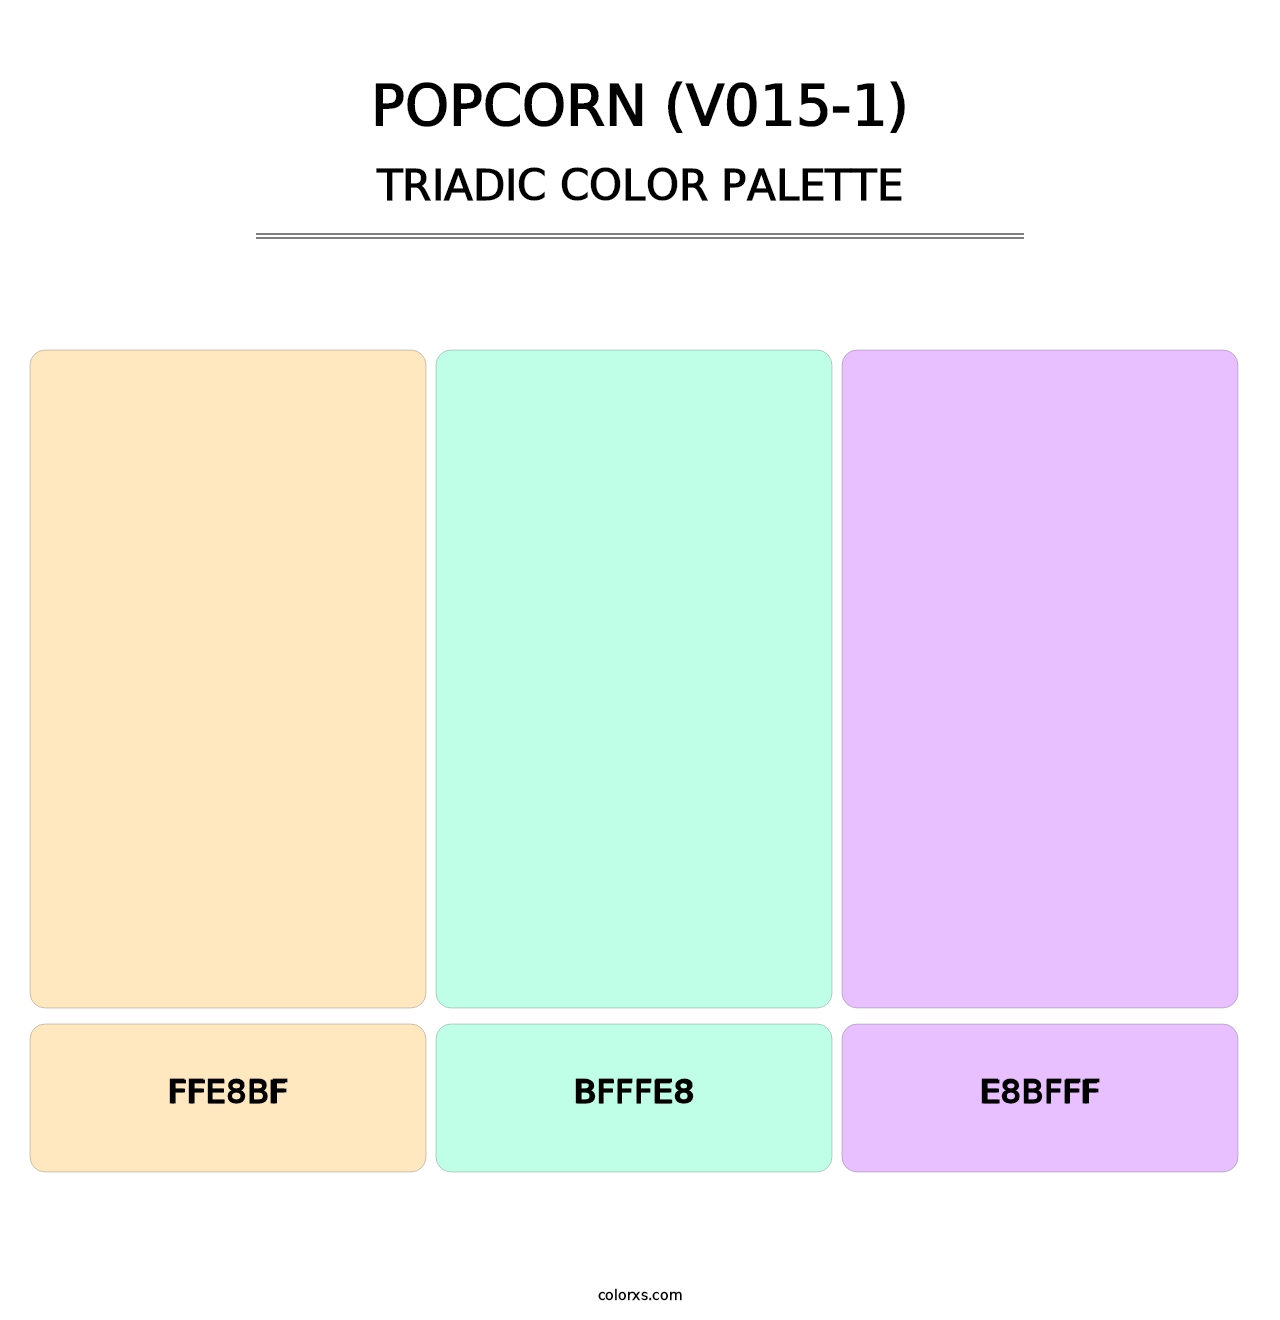 Popcorn (V015-1) - Triadic Color Palette